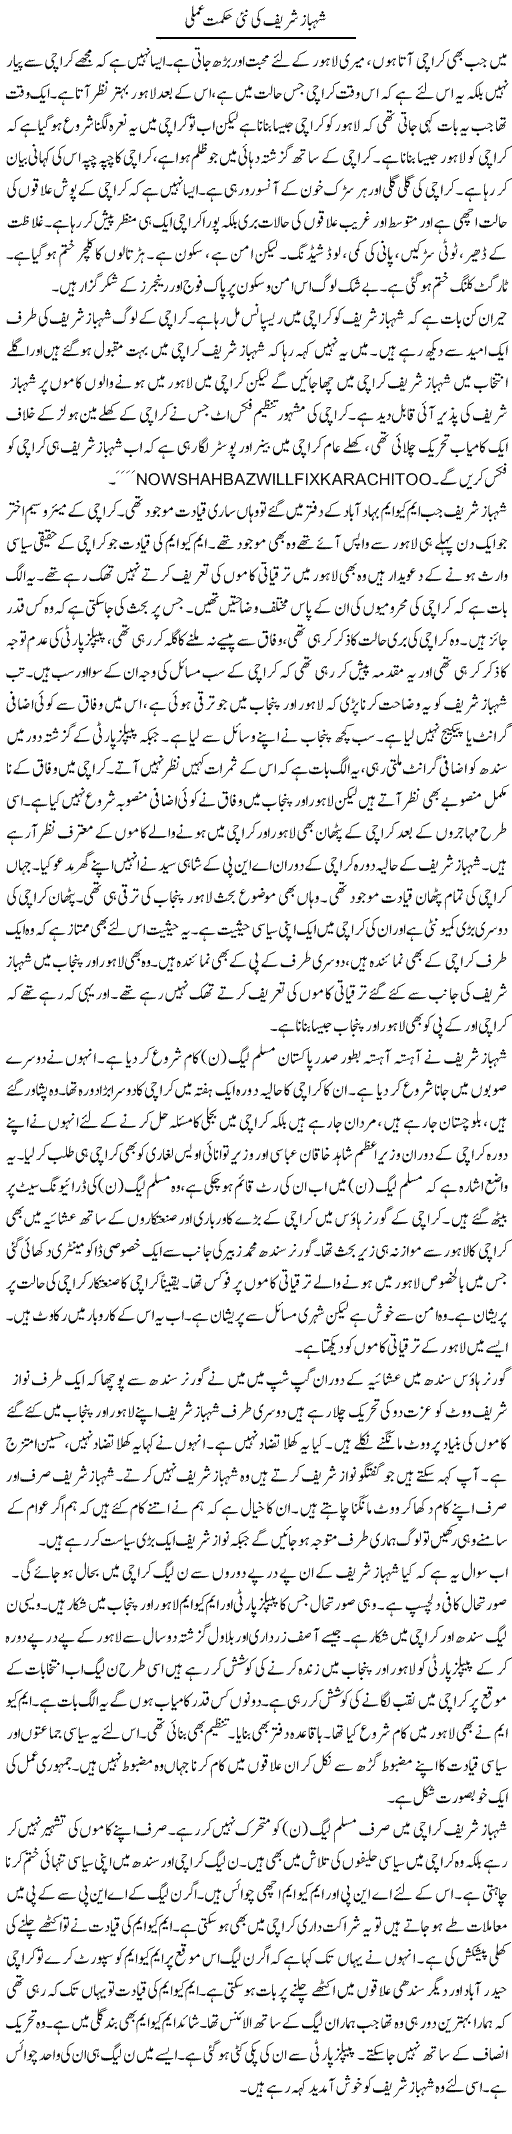 Shahbaz Sharif Ki Nai Hikmat e Amli | Muzamal Suharwardy | Daily Urdu Columns